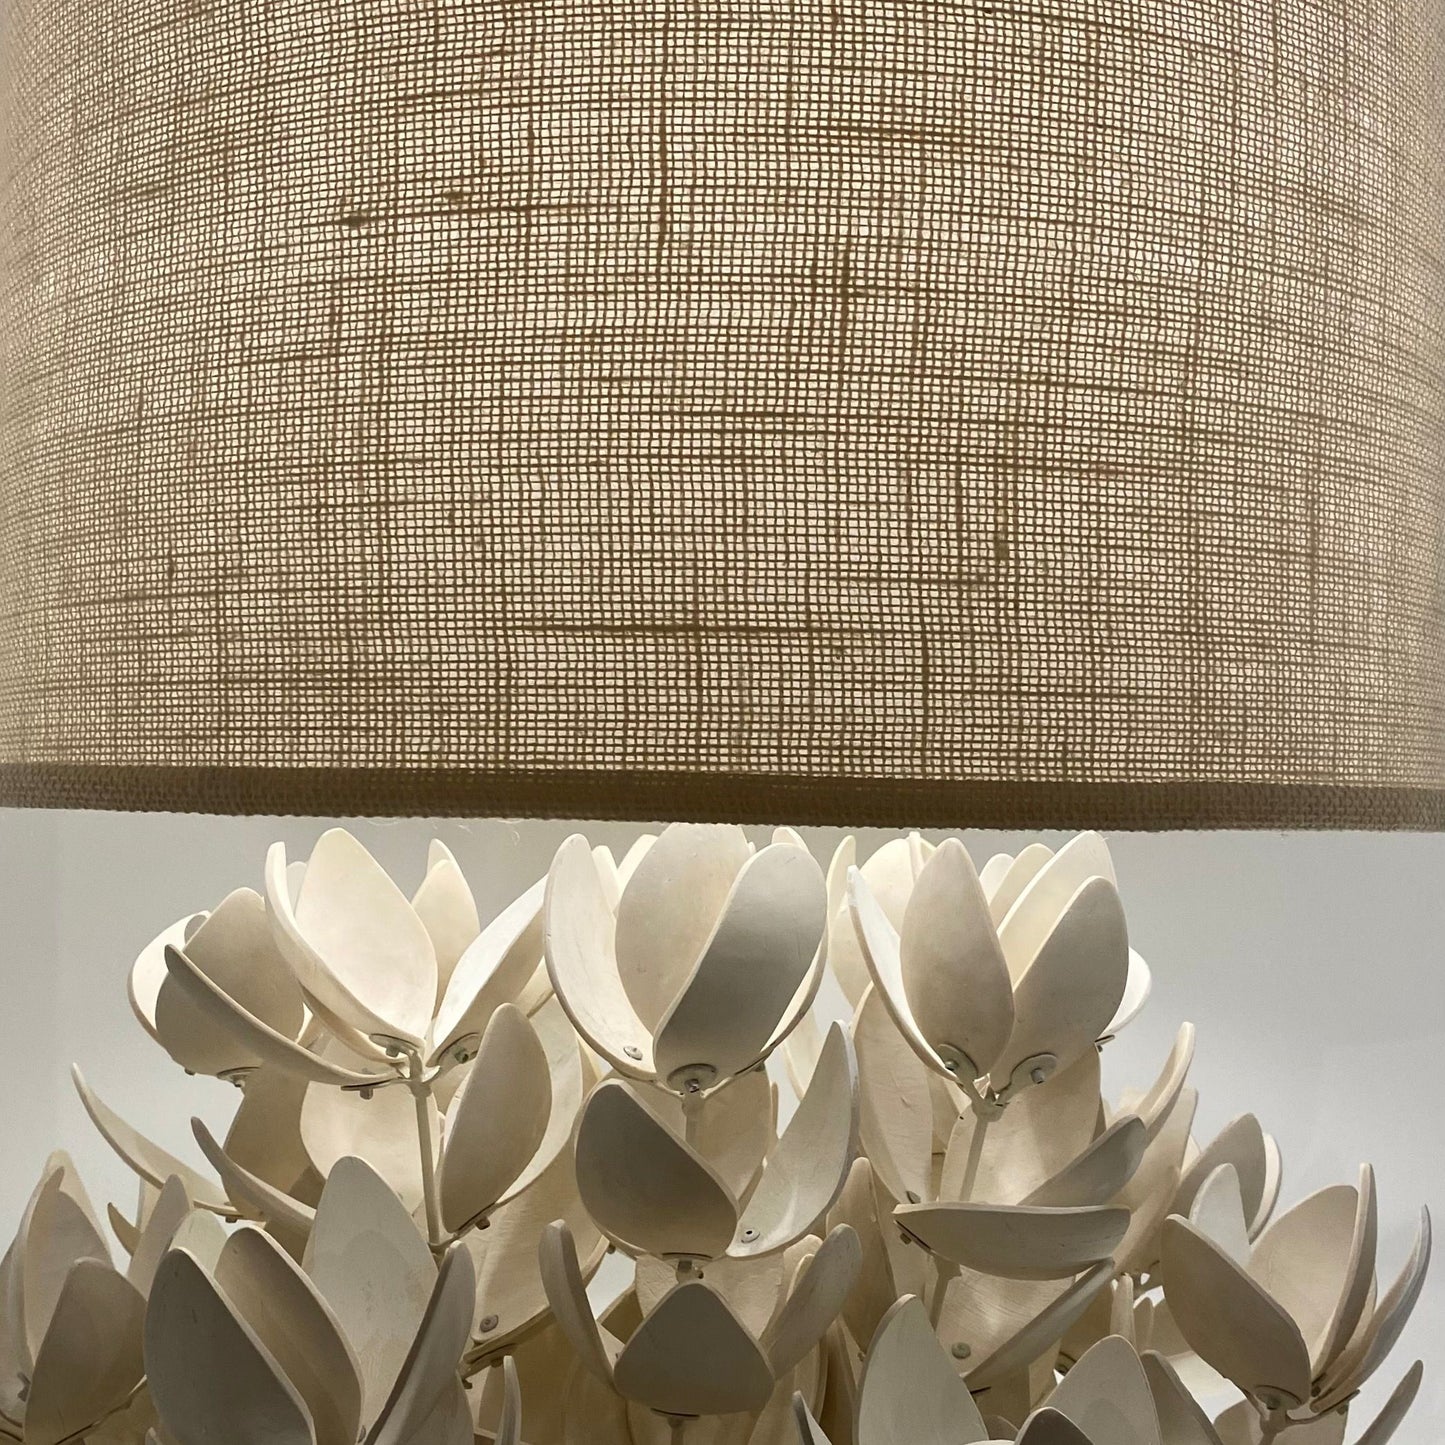 palecek coco magnolia lamp illuminated